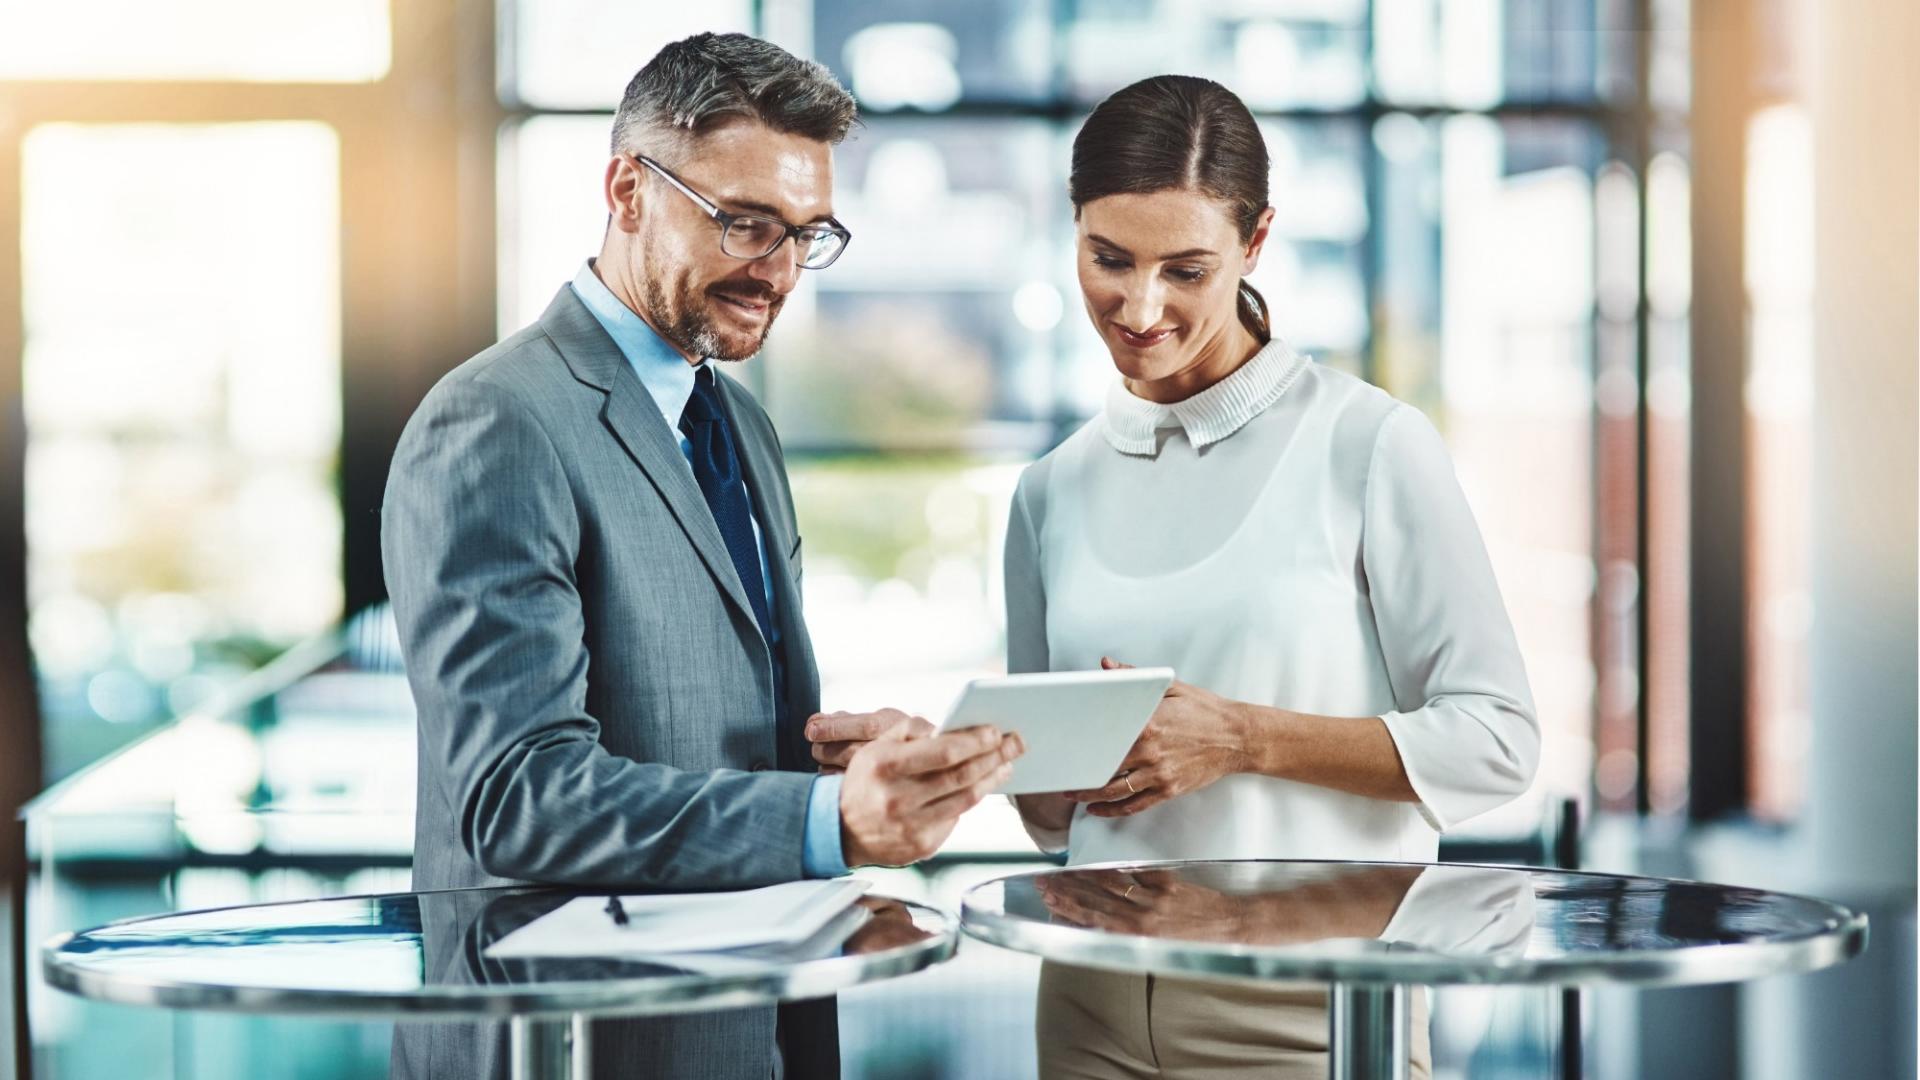 Ein Mann und eine Frau in Business-Kleidung stehen gemeinsam an einem Stehtisch und sehen auf ein Tablet.